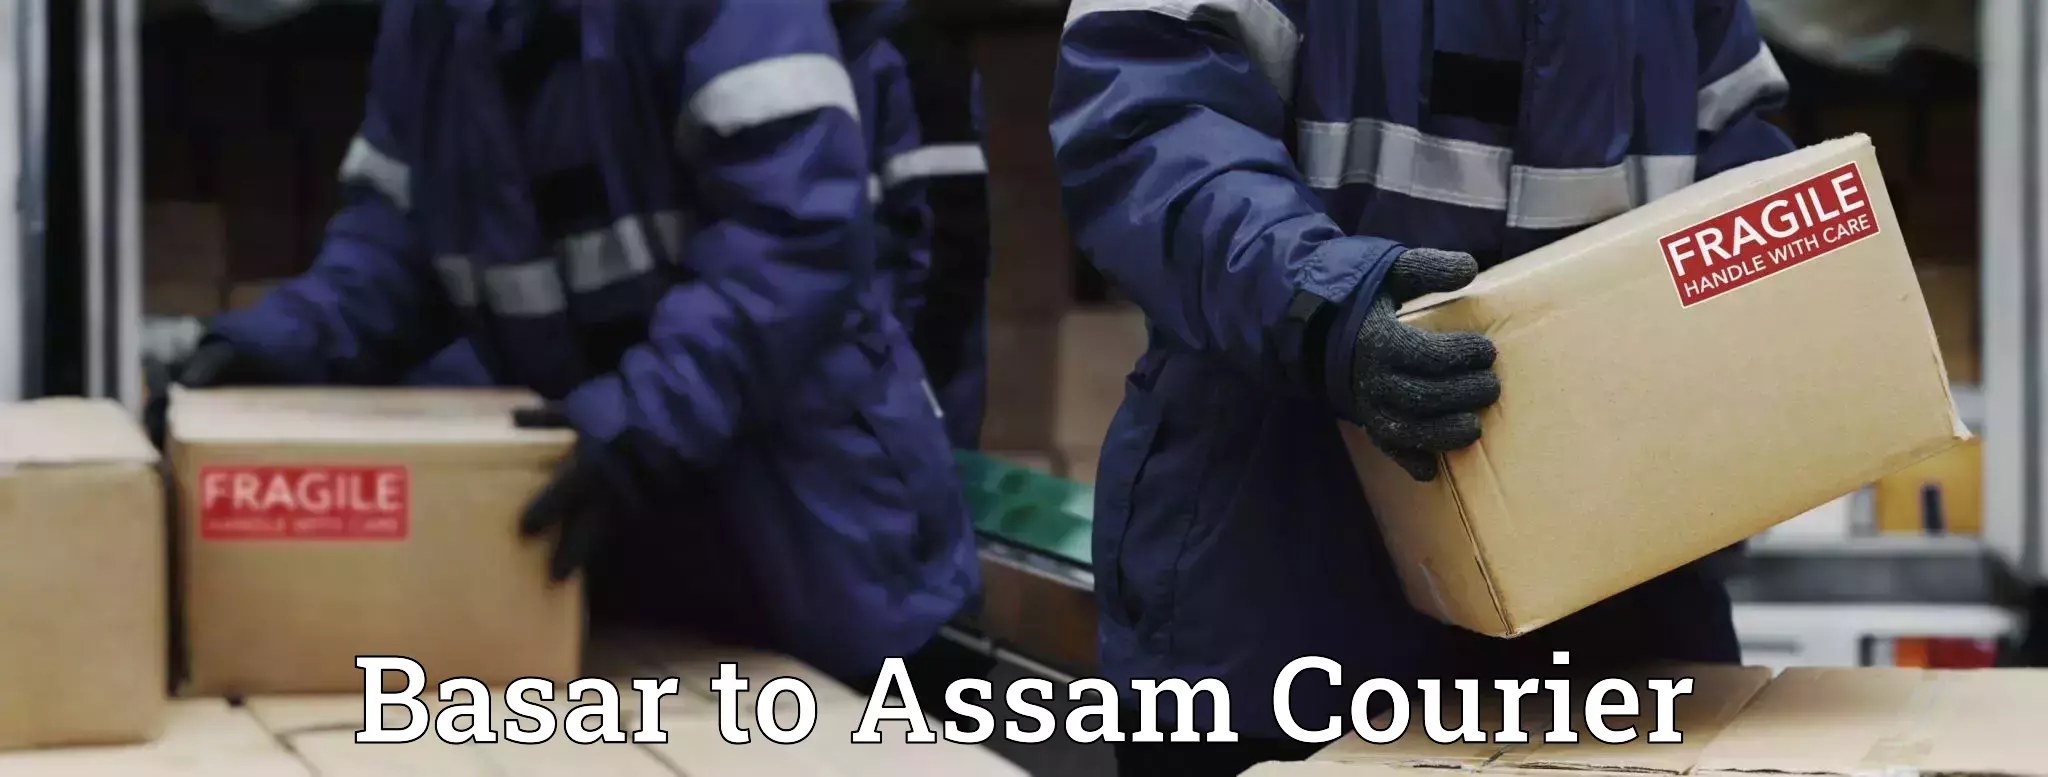 Global logistics network Basar to Assam